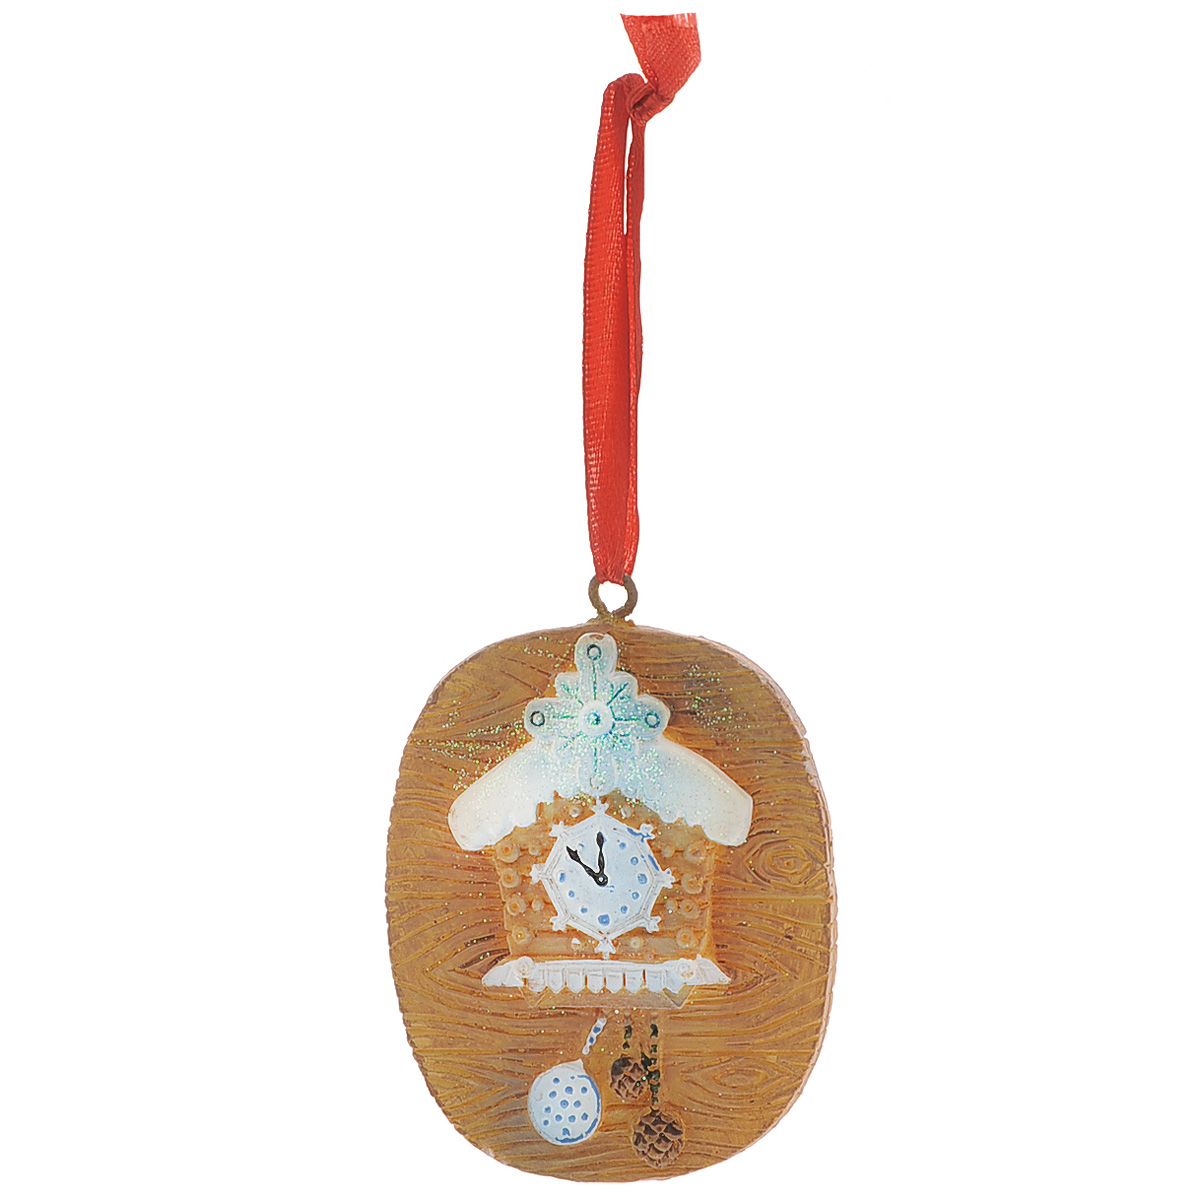 Новогоднее подвесное украшение "Сказочные часы с шишками", цвет: коричневый. 34580